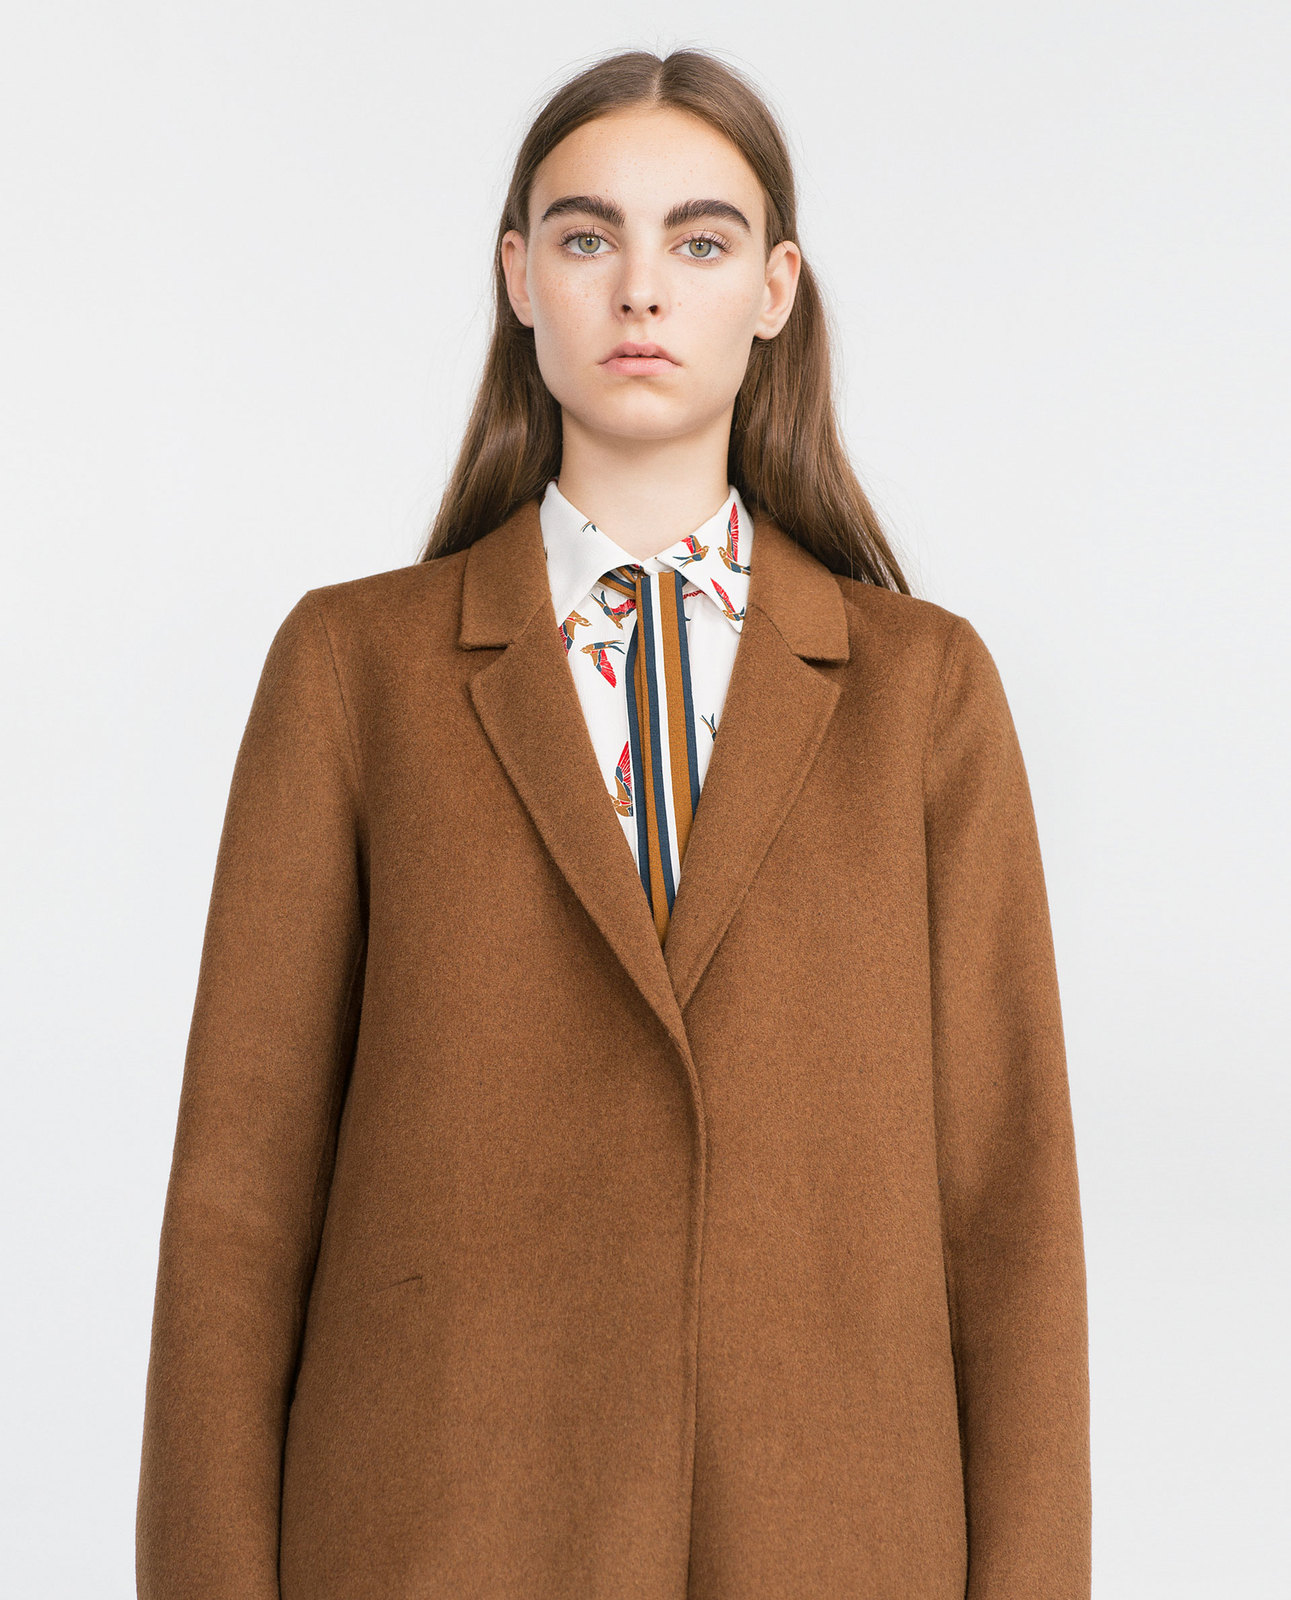 Zara női kézzel készített kabát 2015.10.15 fotója